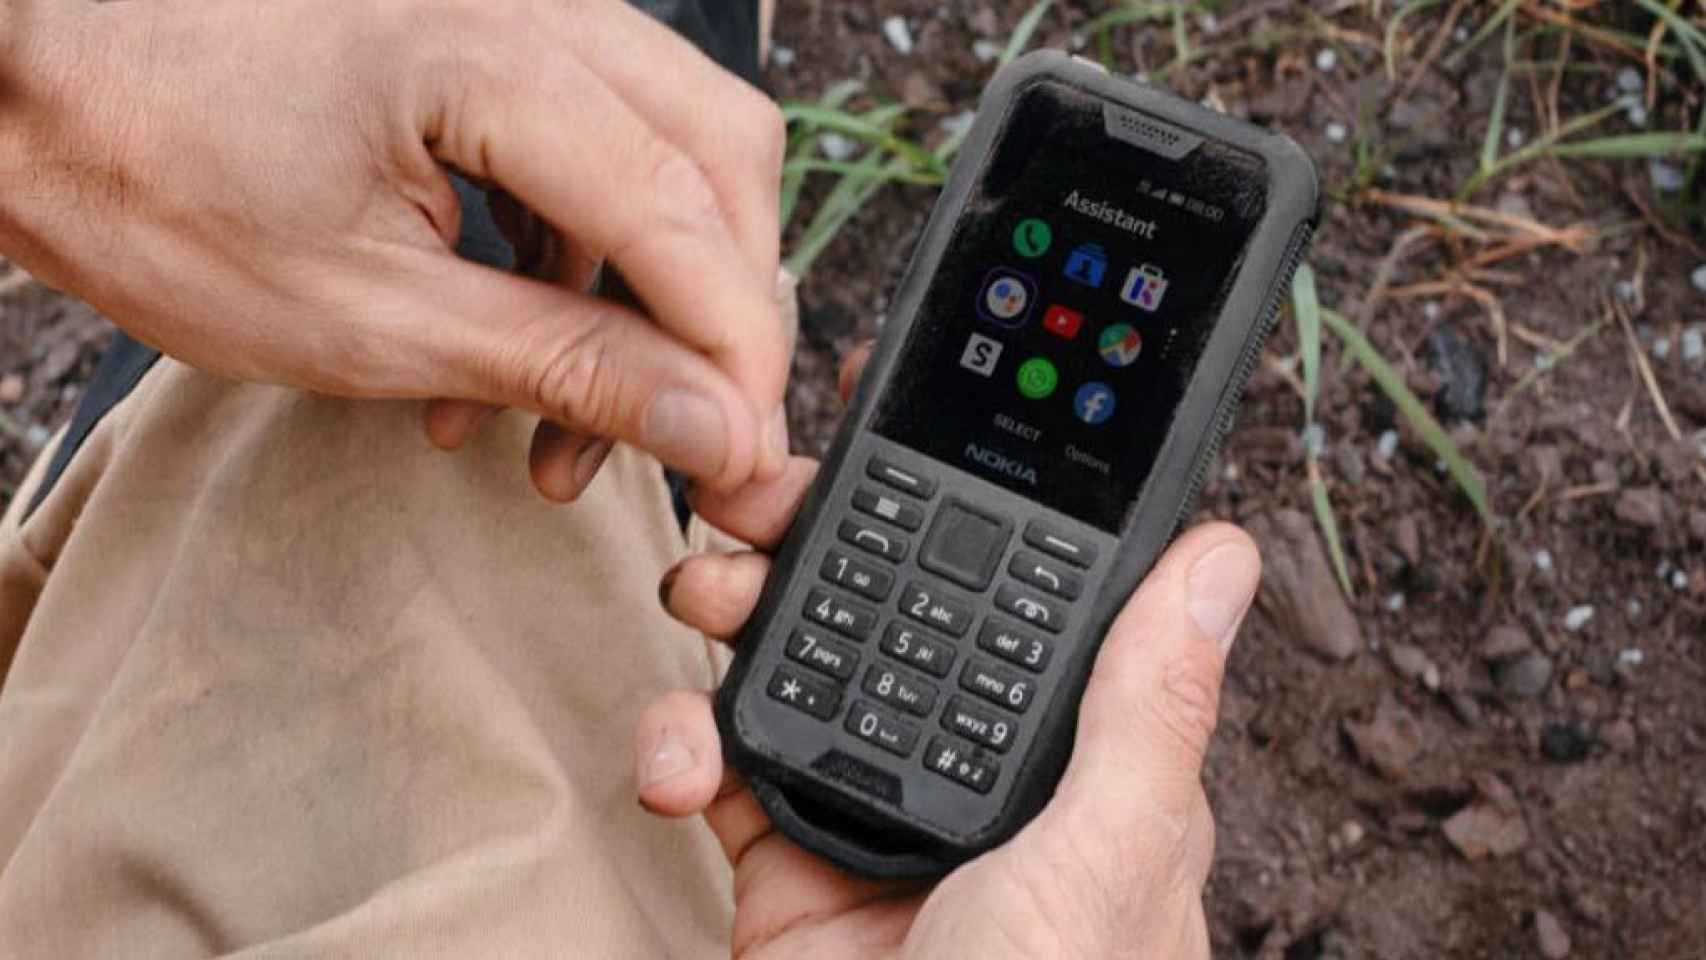 El Nokia 3310 ya tiene rival: llega el indestructible Nokia 800 Tough